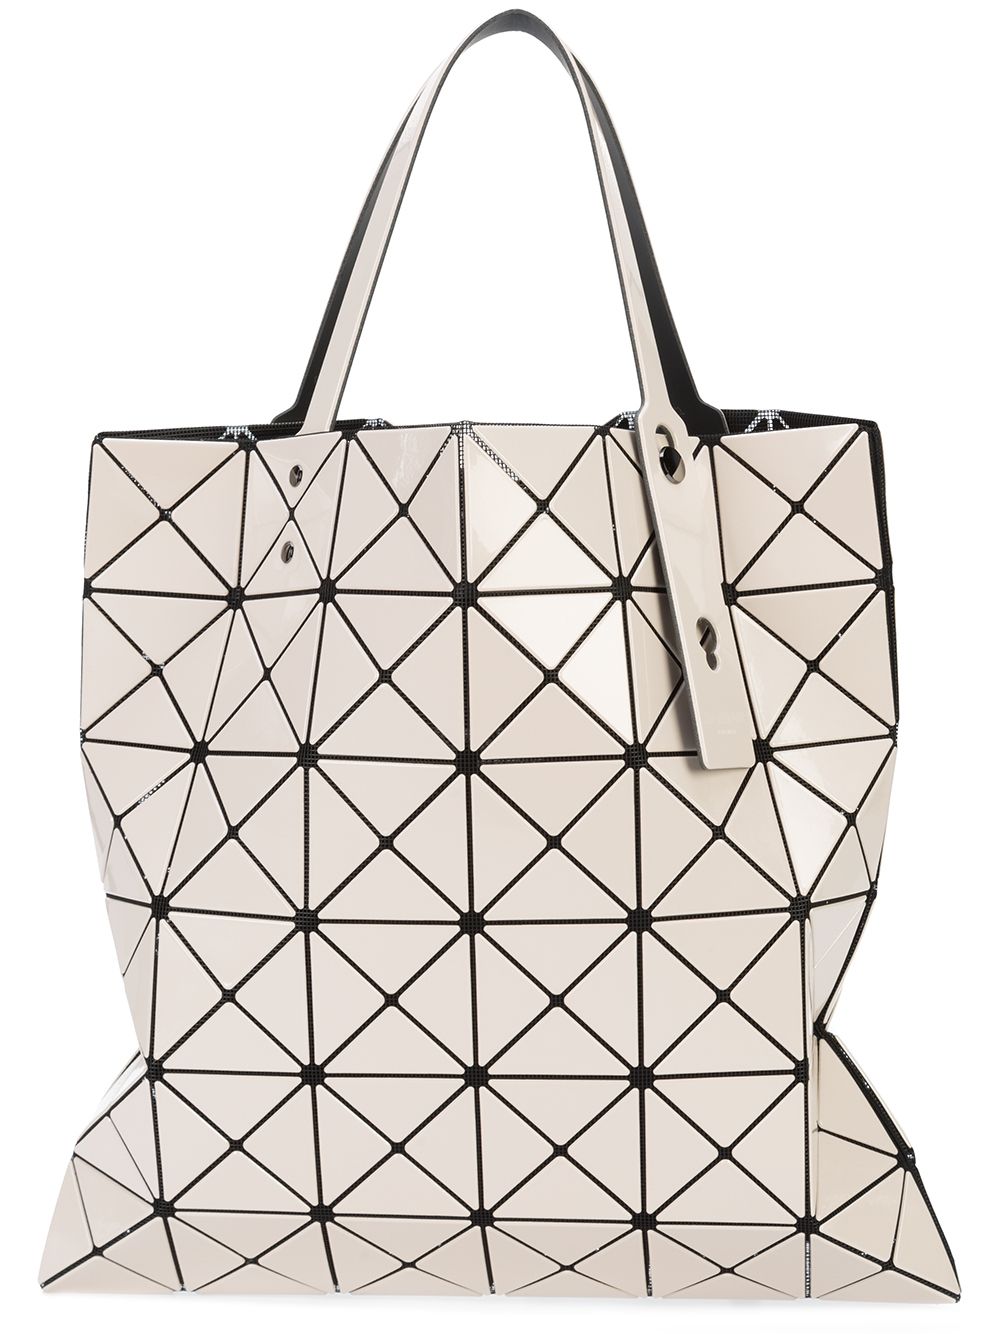 фото Bao bao issey miyake сумка-тоут с отделкой геометрической формы